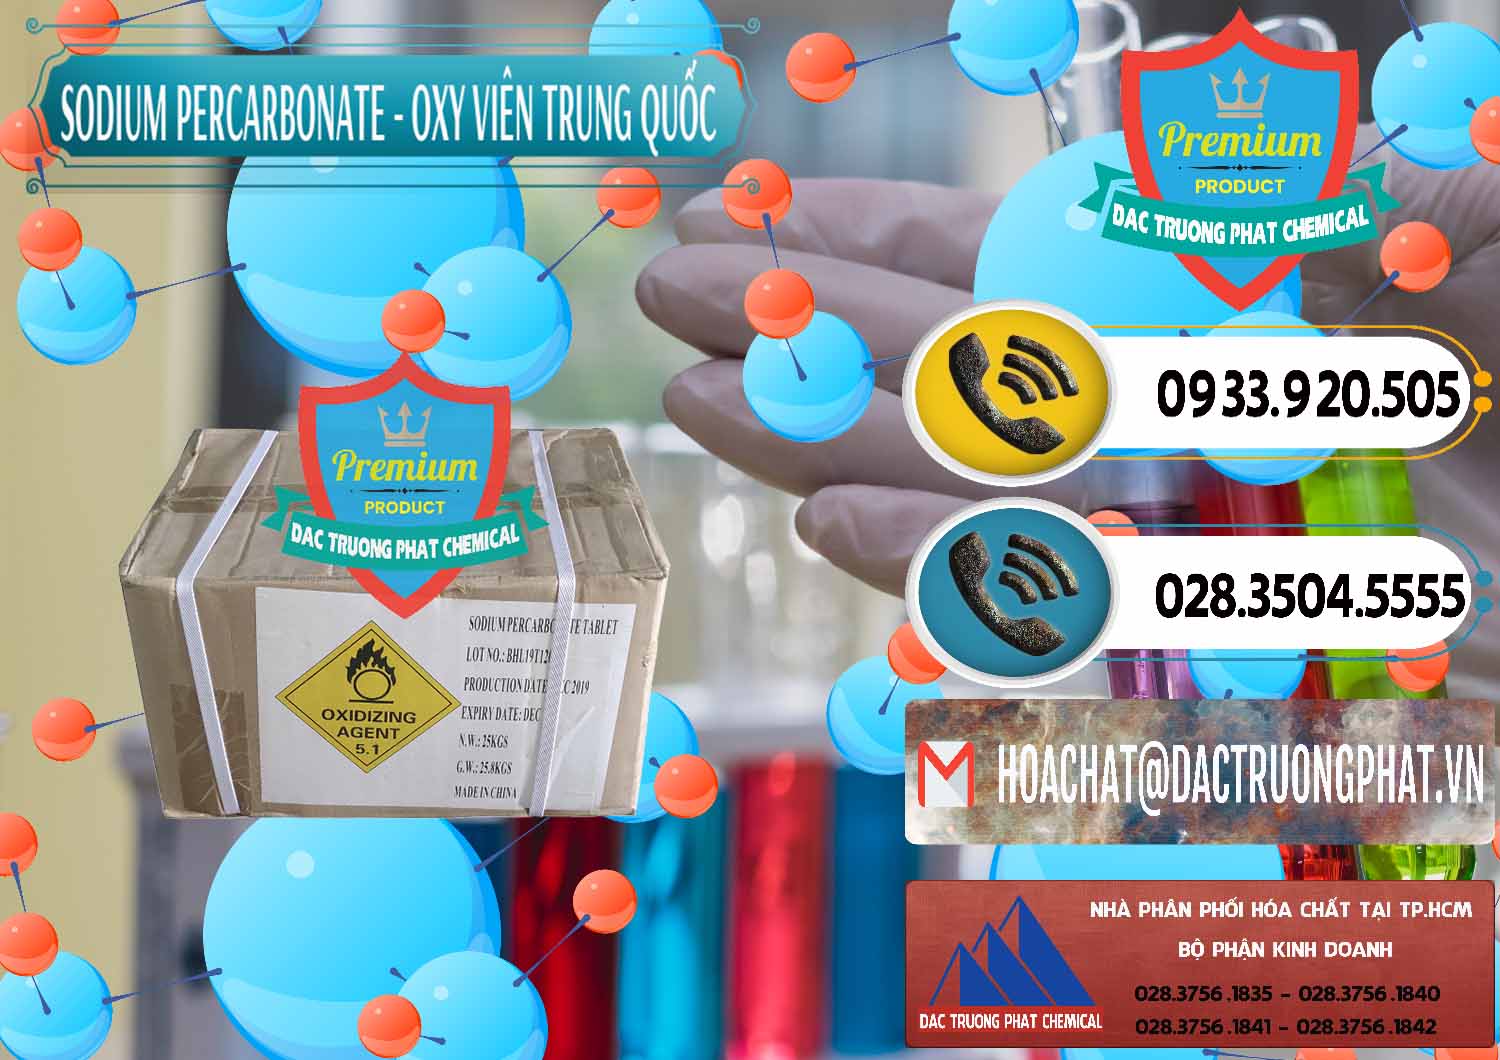 Công ty cung ứng & bán Sodium Percarbonate - Oxy Dạng Viên Trung Quốc China - 0329 - Đơn vị kinh doanh và phân phối hóa chất tại TP.HCM - hoachatdetnhuom.vn